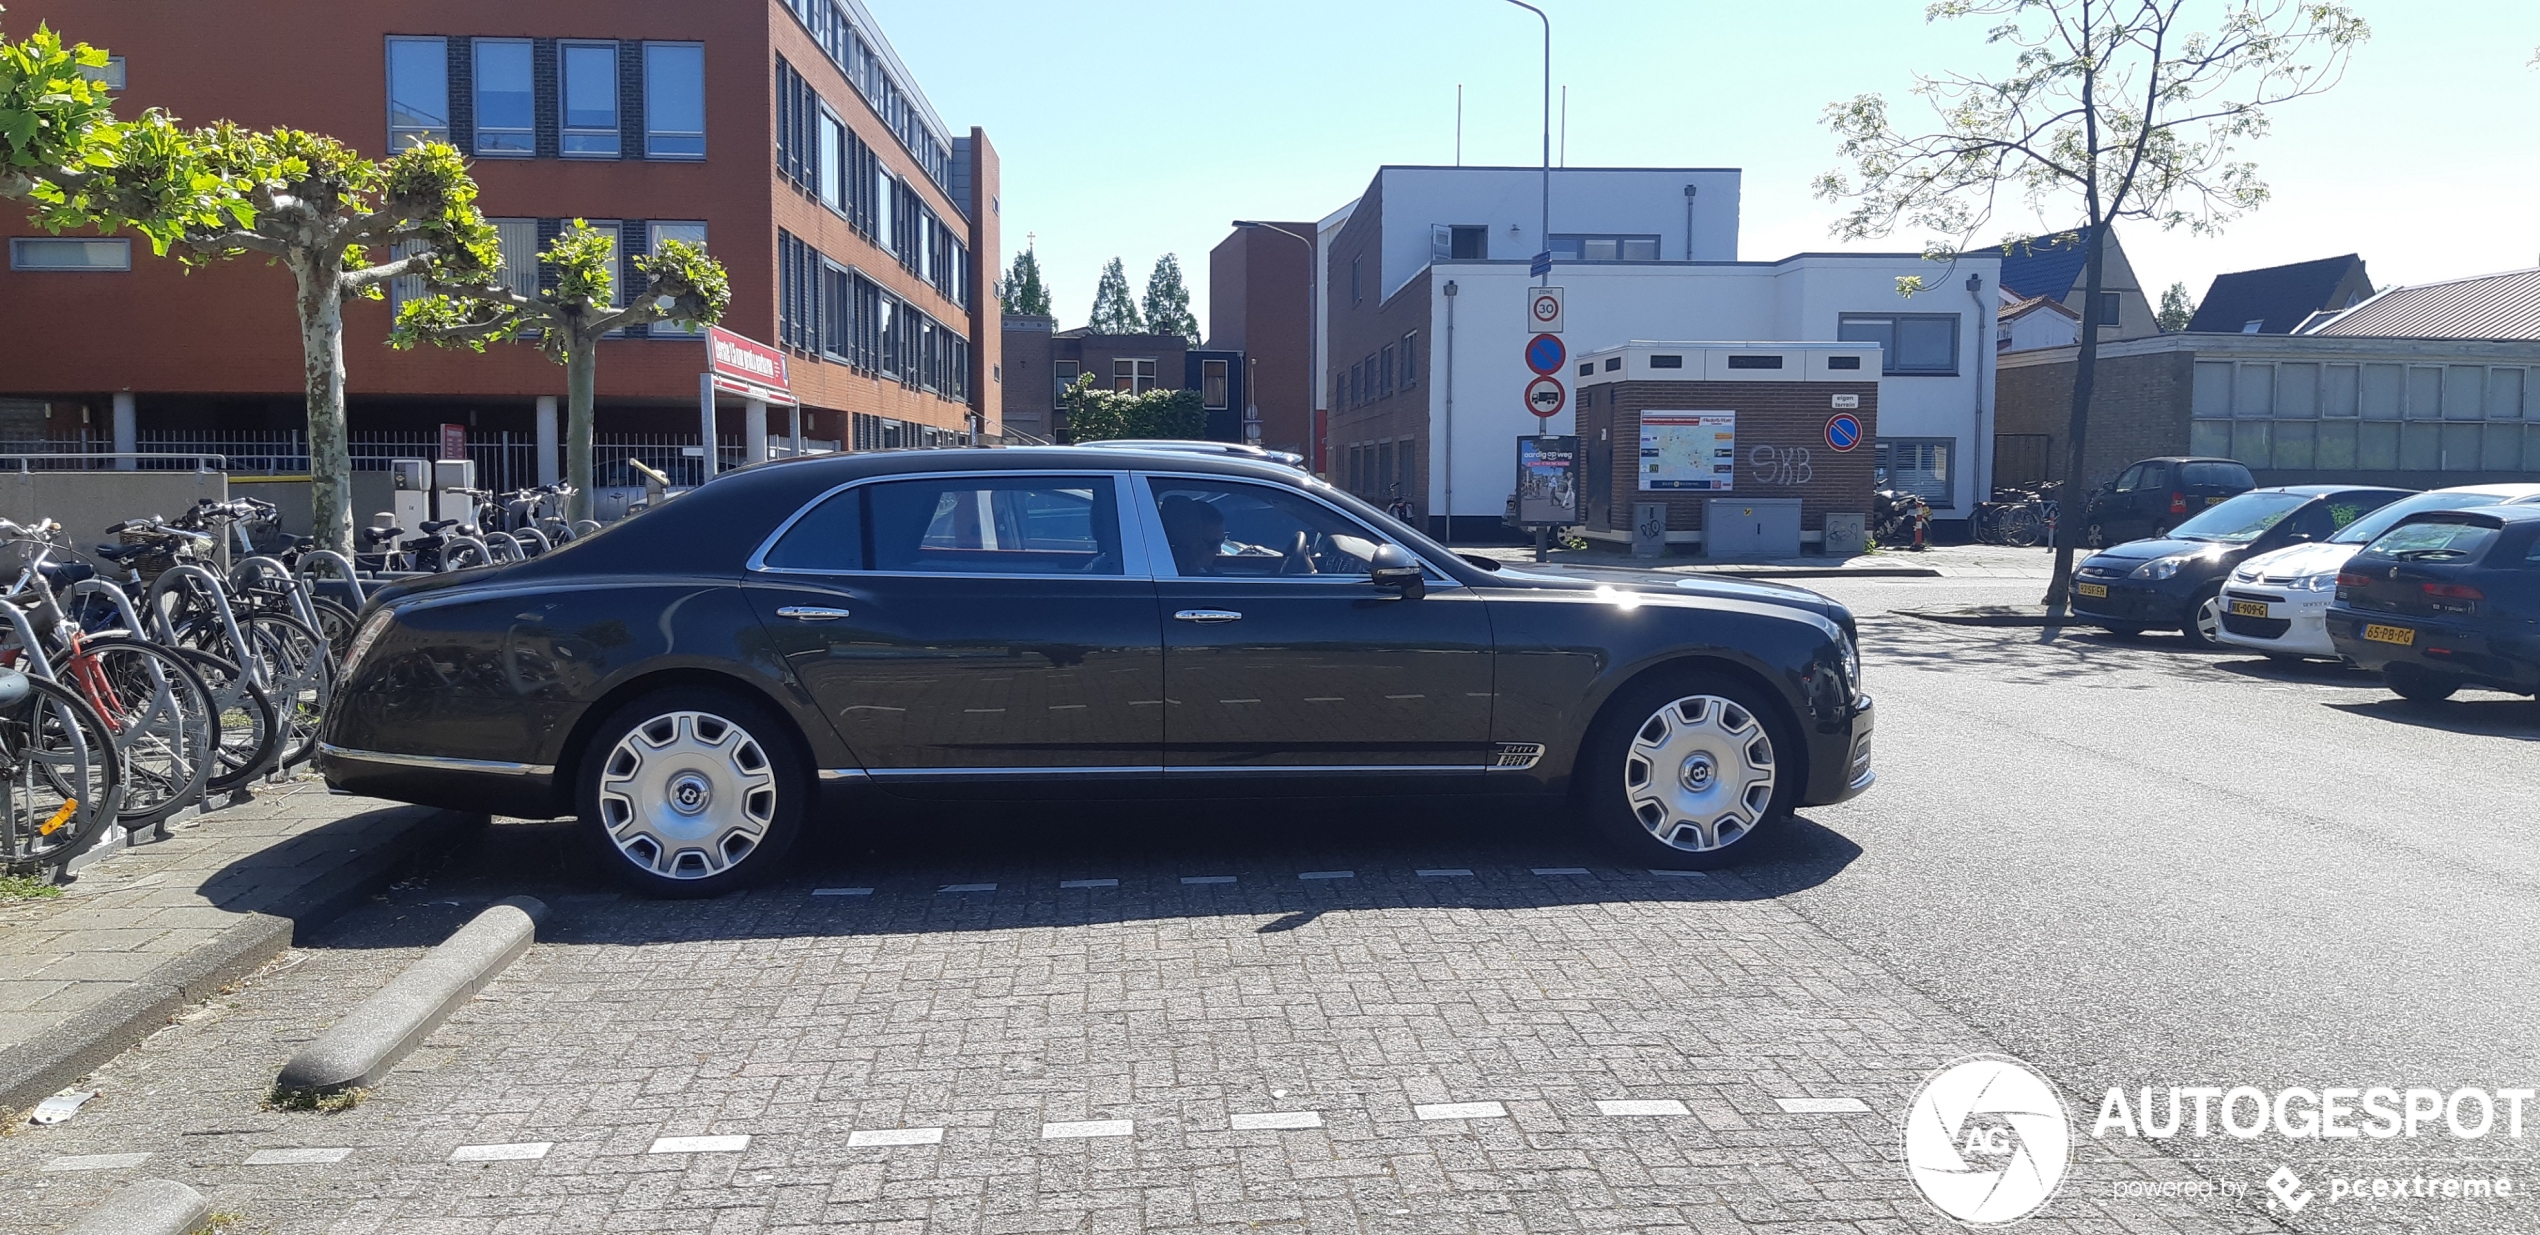 Ongeschikt voor de gewone parkeerplaats: Bentley Mulsanne EWB